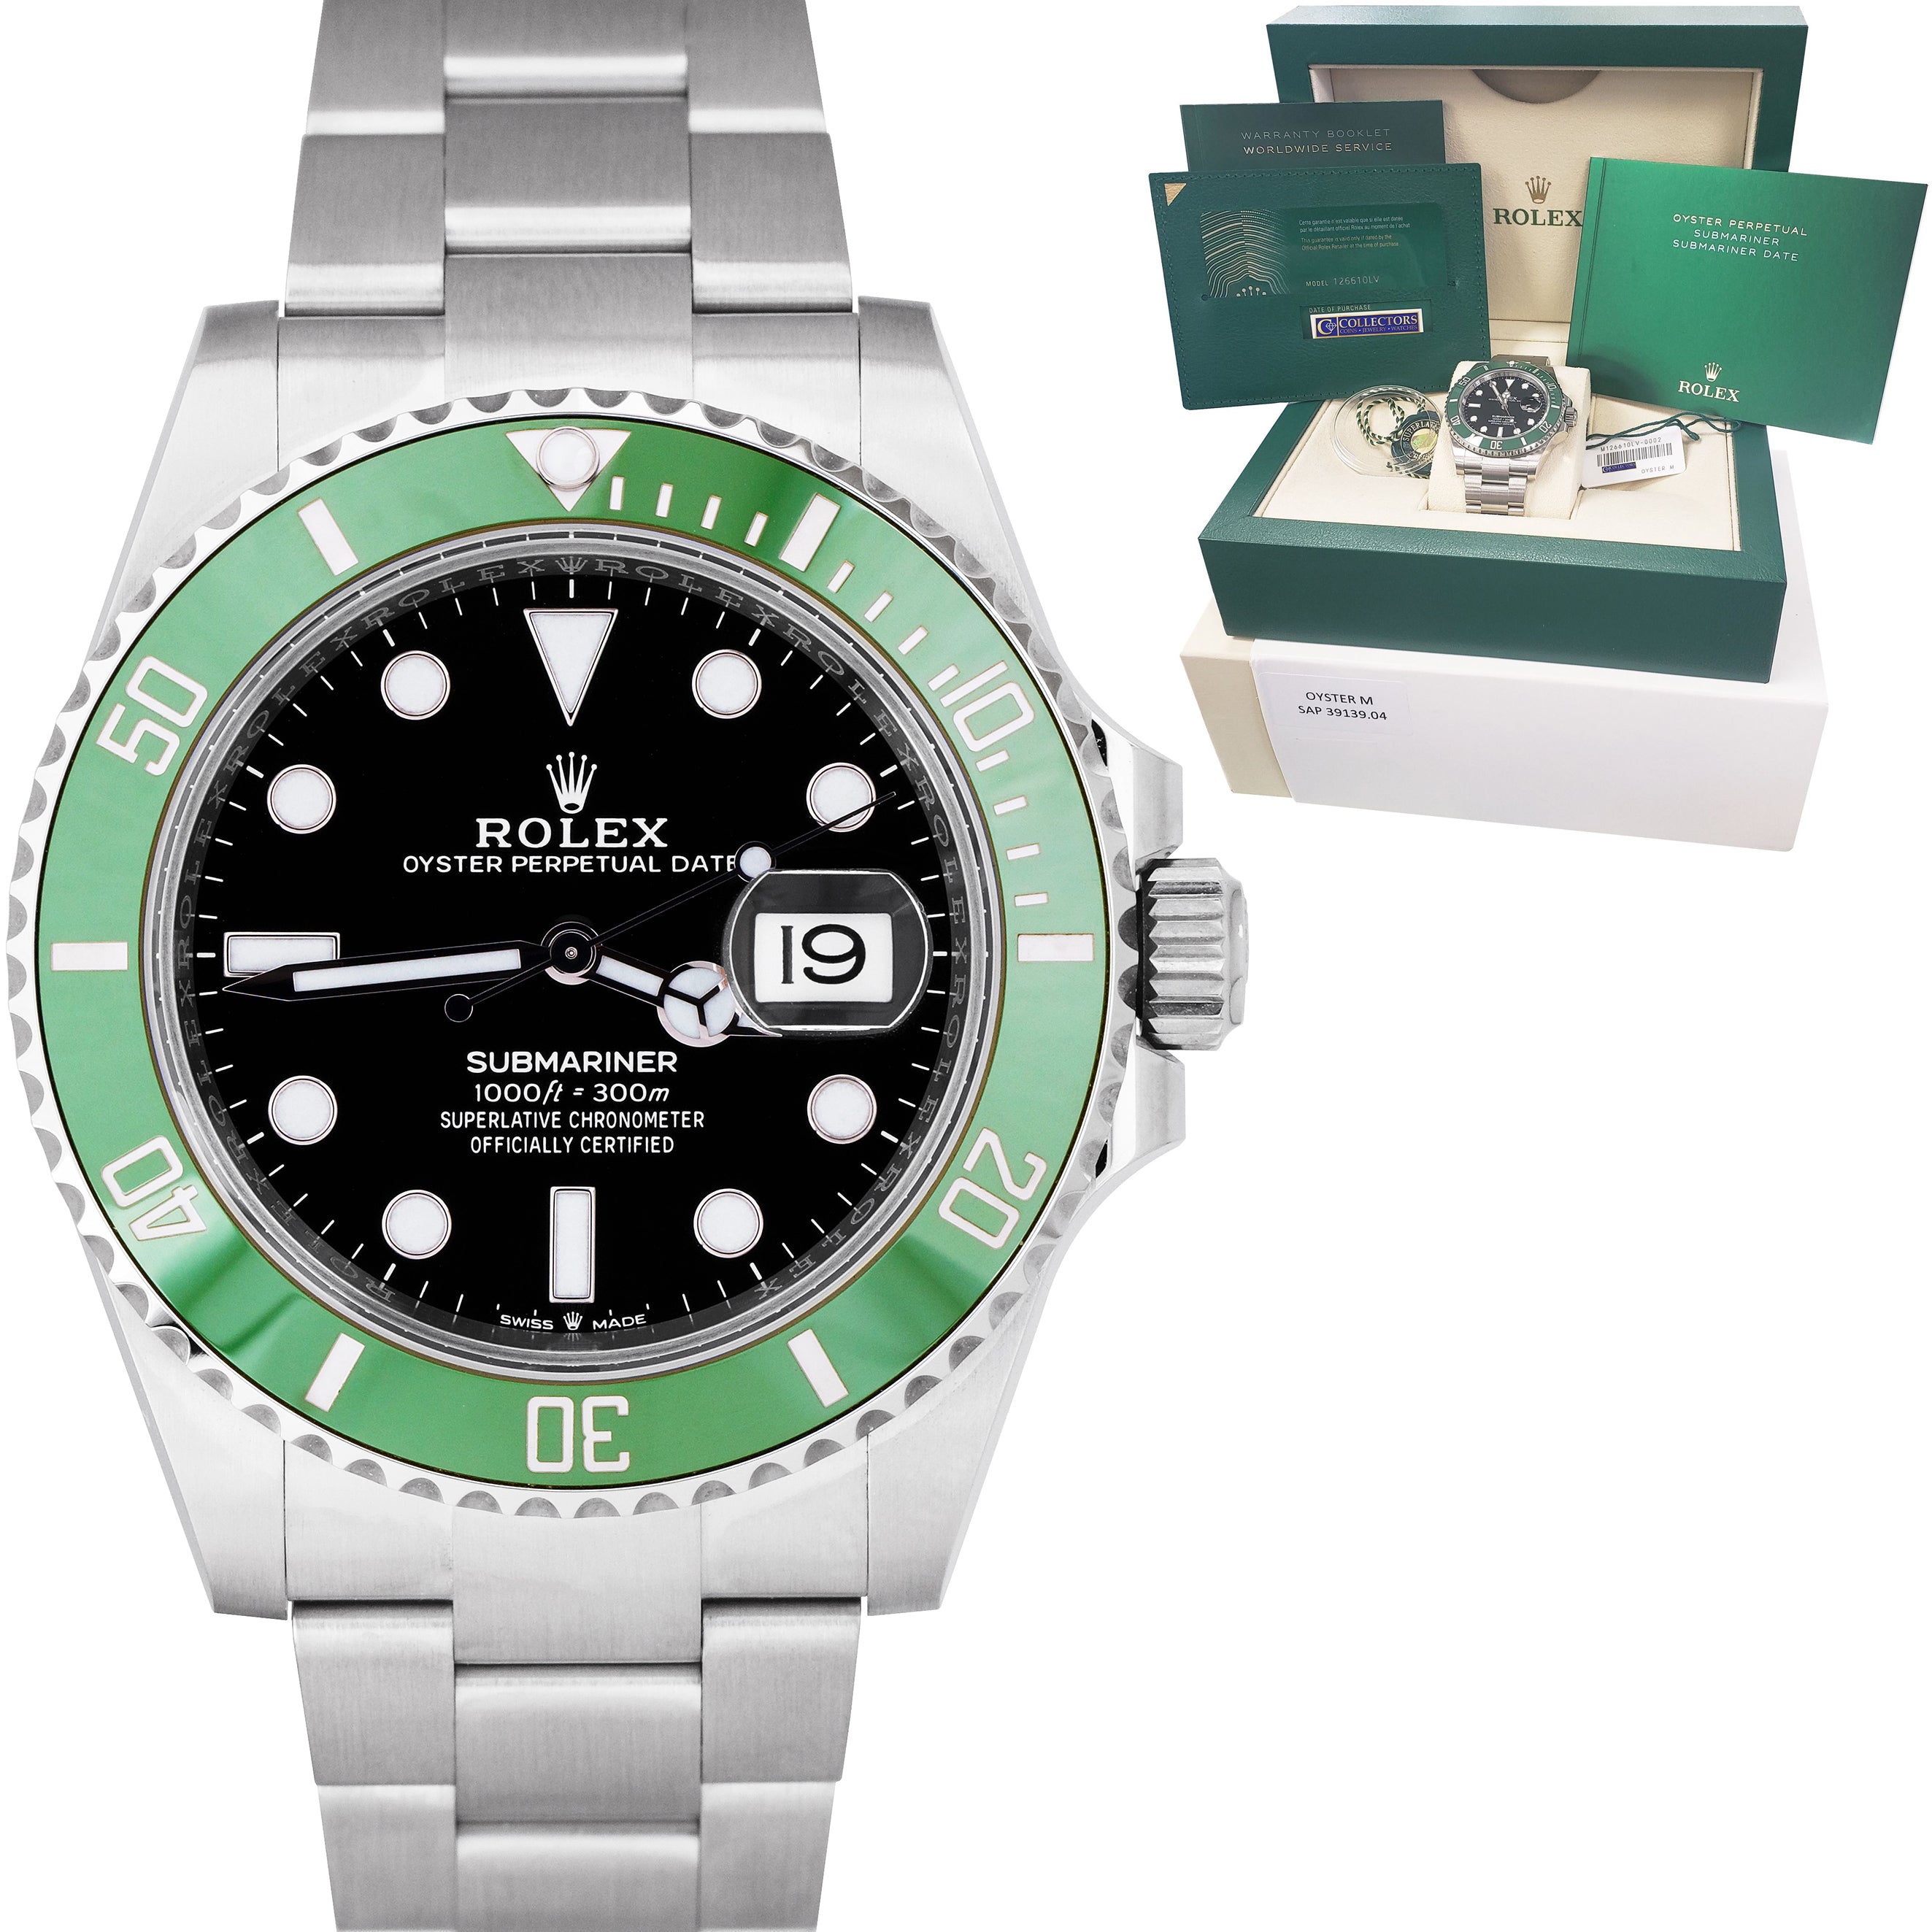 Rolex Submariner Kermit Green Ceramic Bezel Mens Watch 126610 Unworn